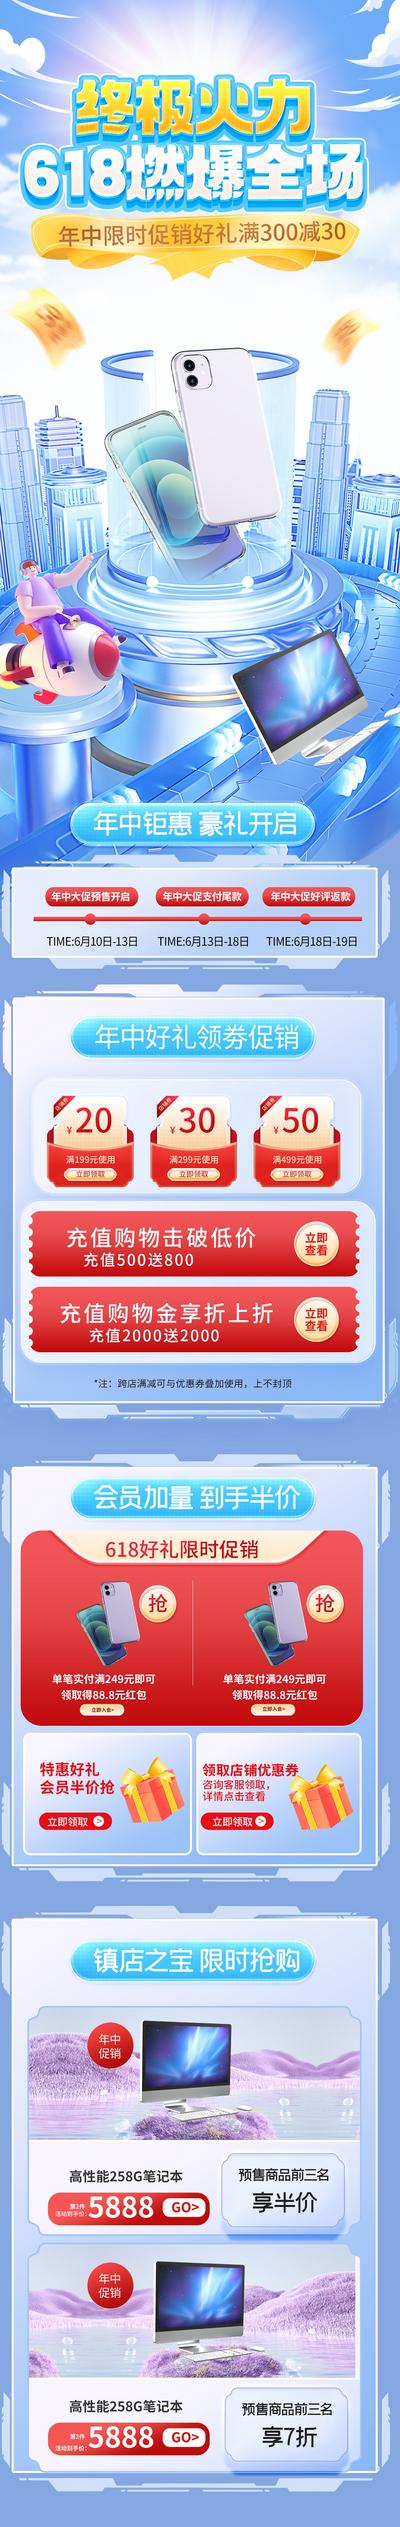 南门网 电商 科技 促销 618 双十一 大促 数码 首页 手机 购物节 3C 专题